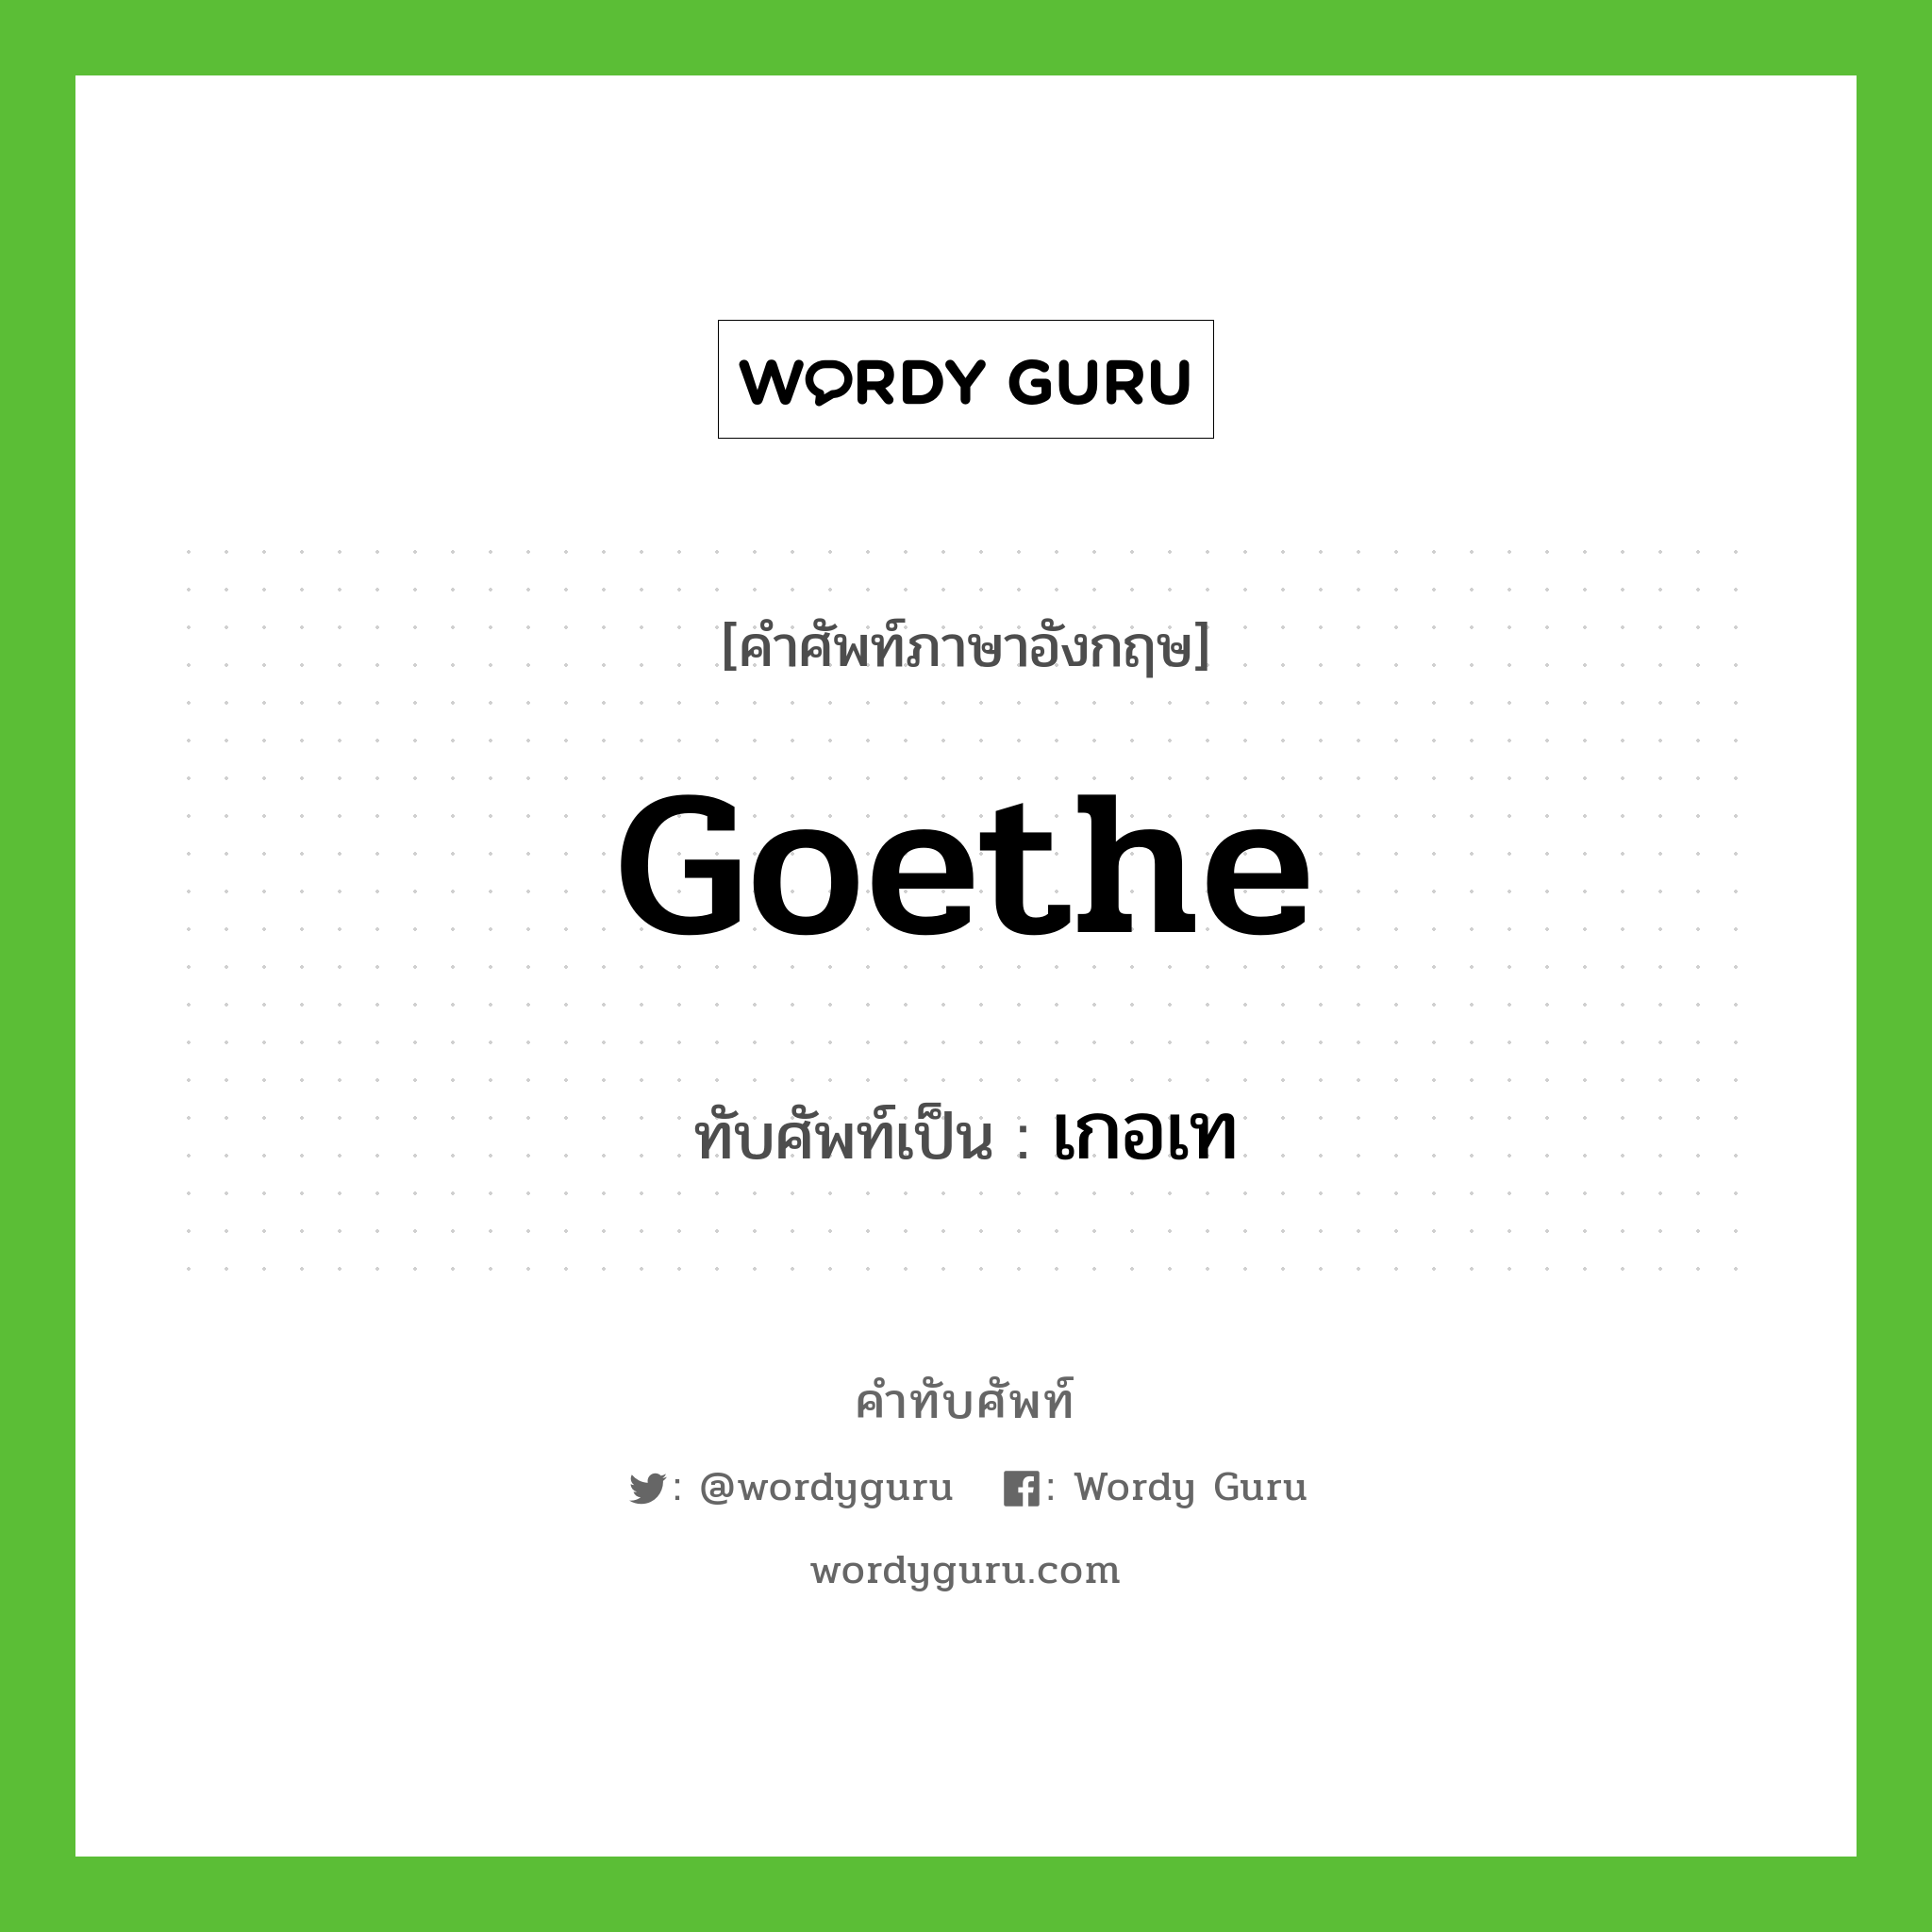 Goethe เขียนเป็นคำไทยว่าอะไร?, คำศัพท์ภาษาอังกฤษ Goethe ทับศัพท์เป็น เกอเท